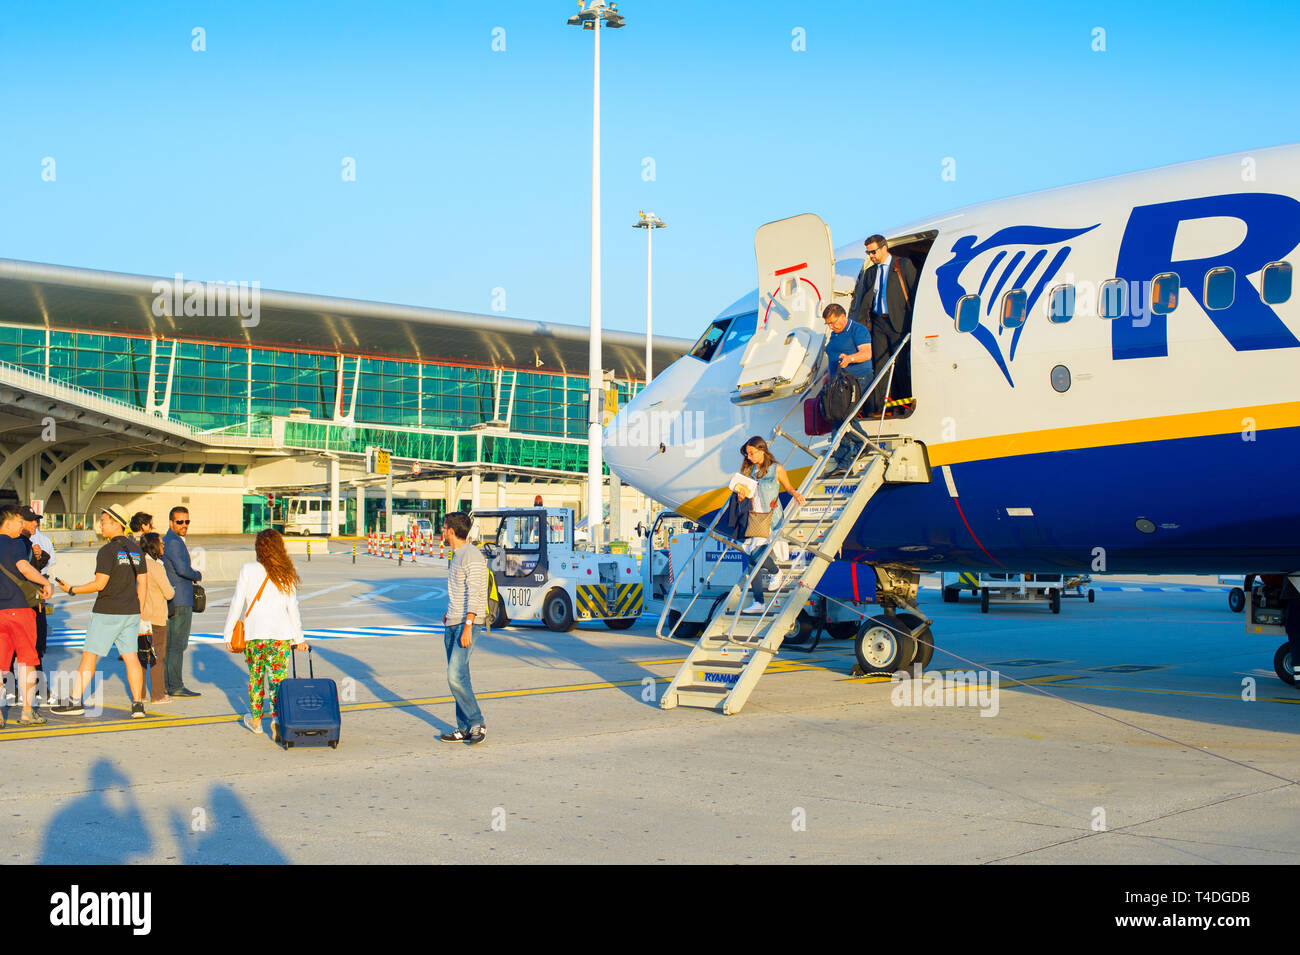 PORTO, Portugal - 24 de mayo de 2017: avión de pasajeros que salen por la escalera, fachada de cristal del aeropuerto en segundo plano. Foto de stock